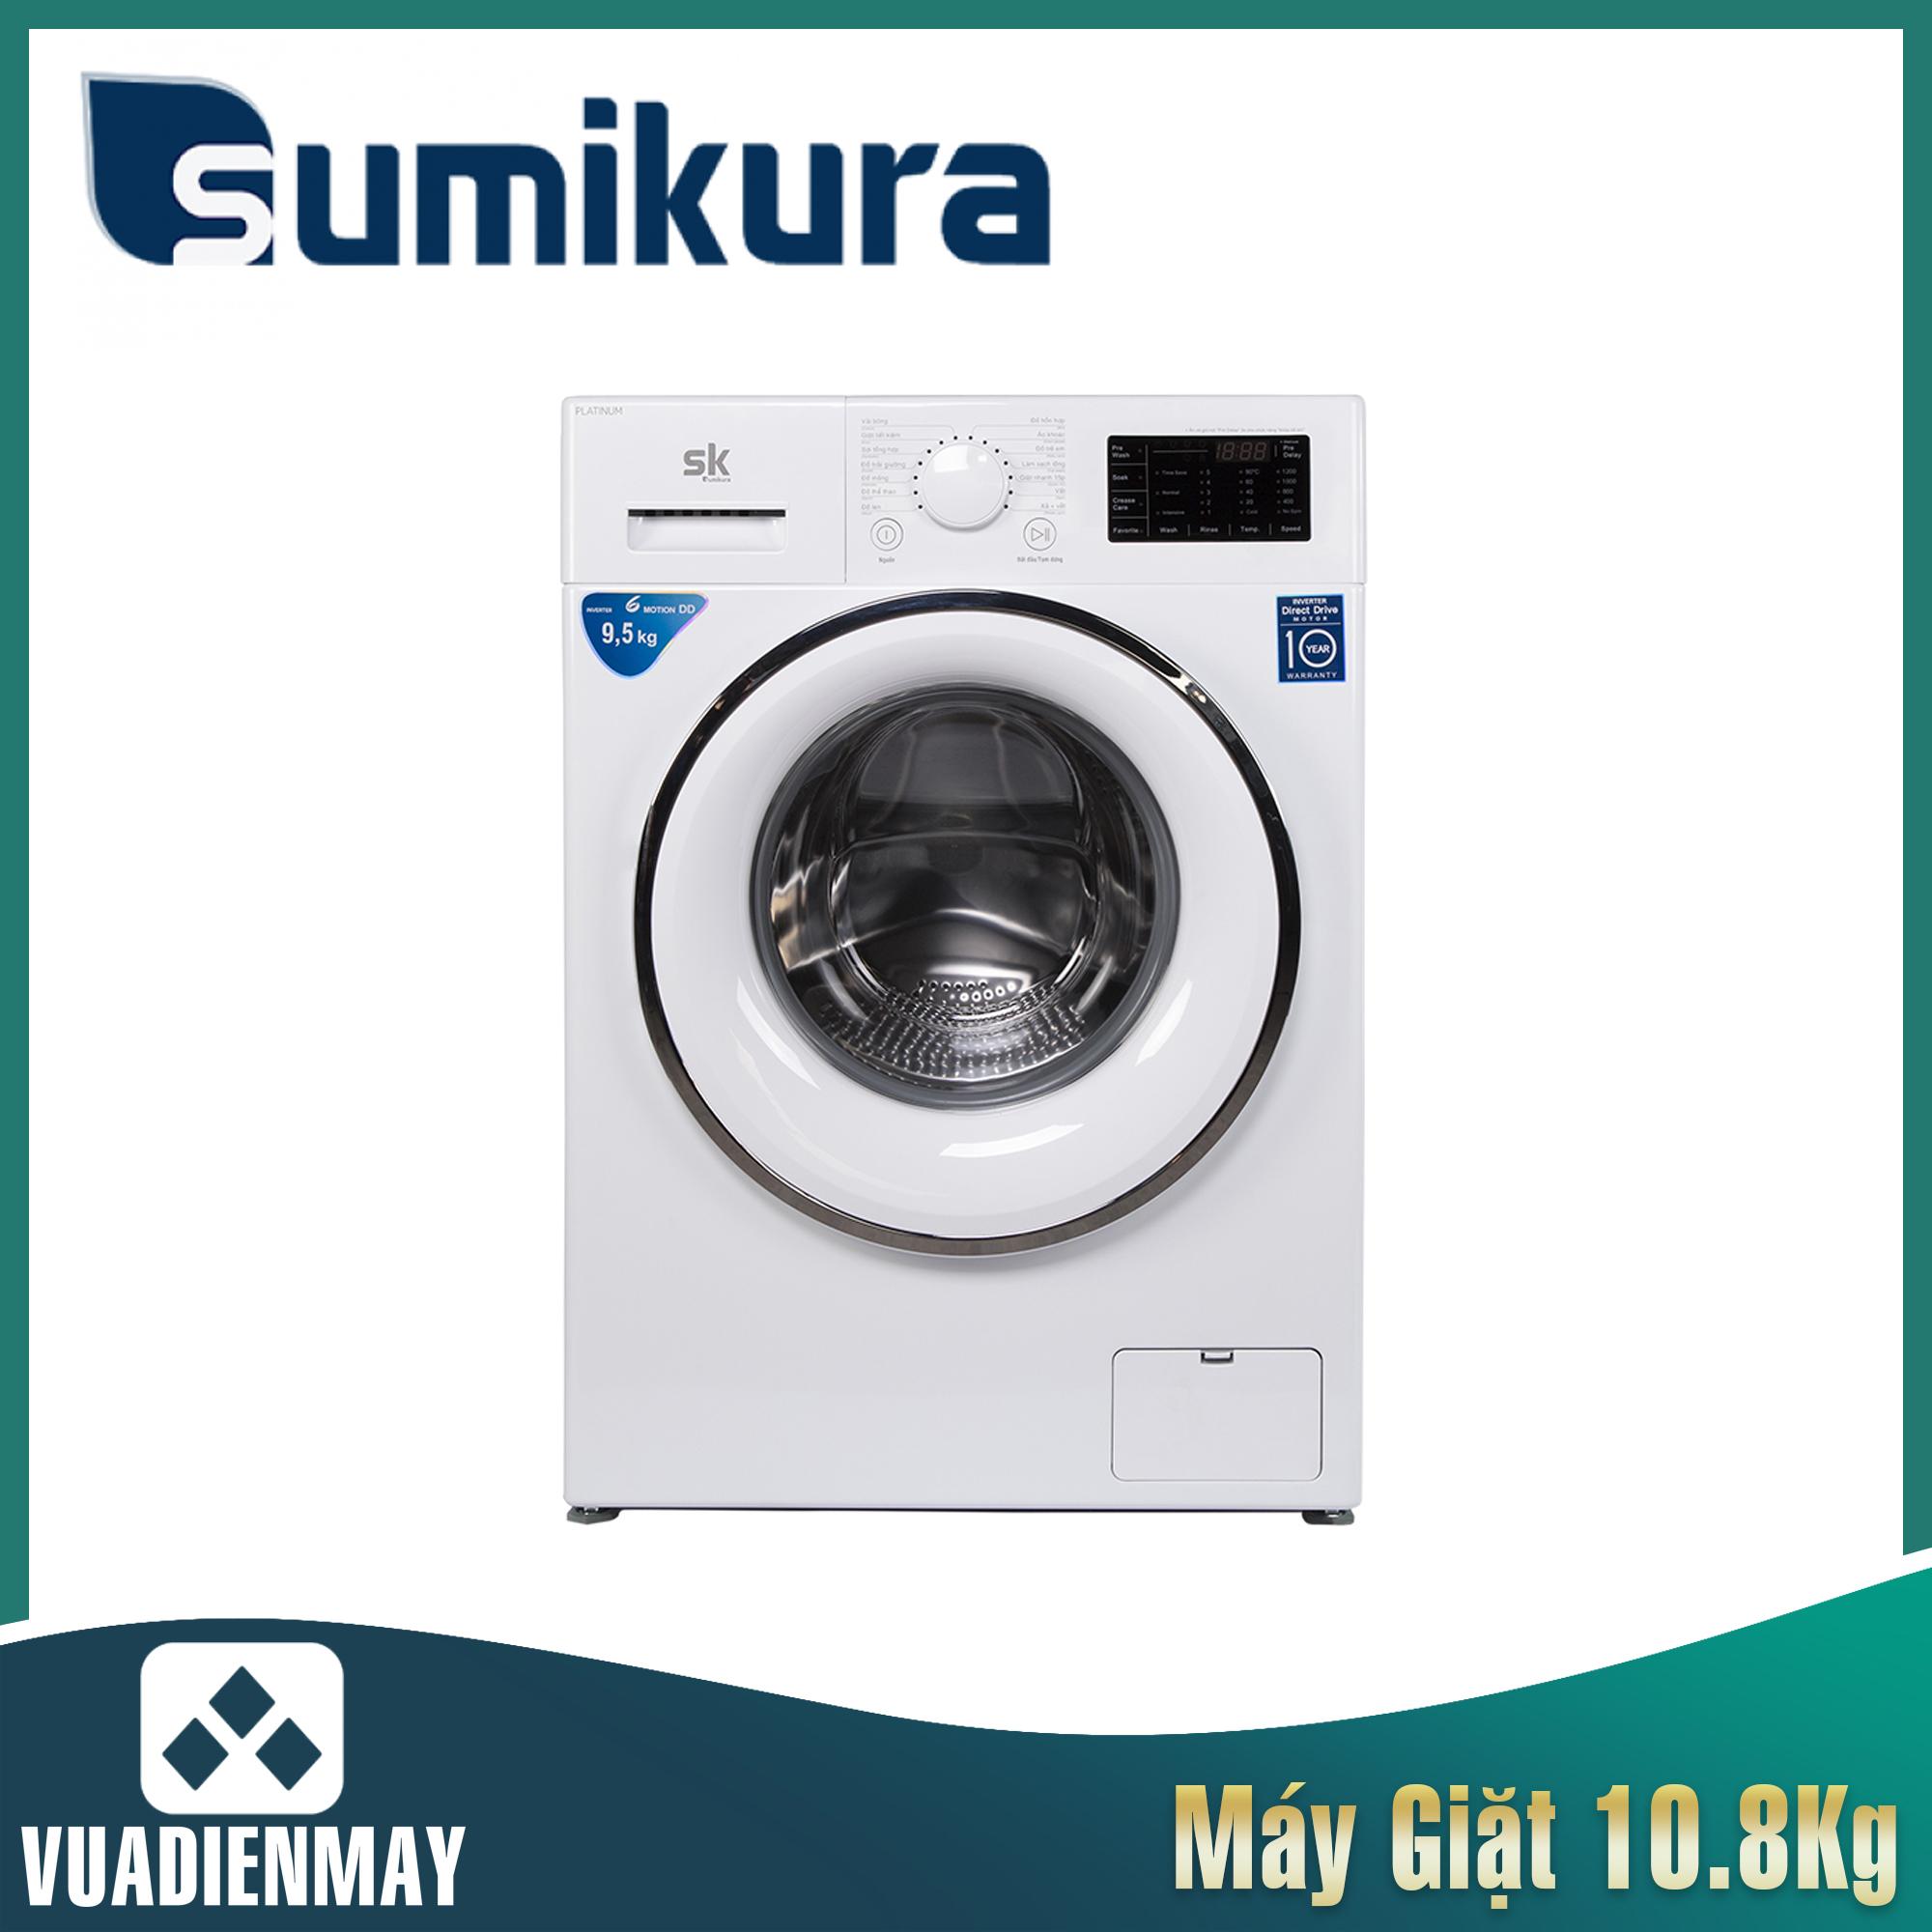 Máy giặt Sumikura  10.8kg lồng ngang